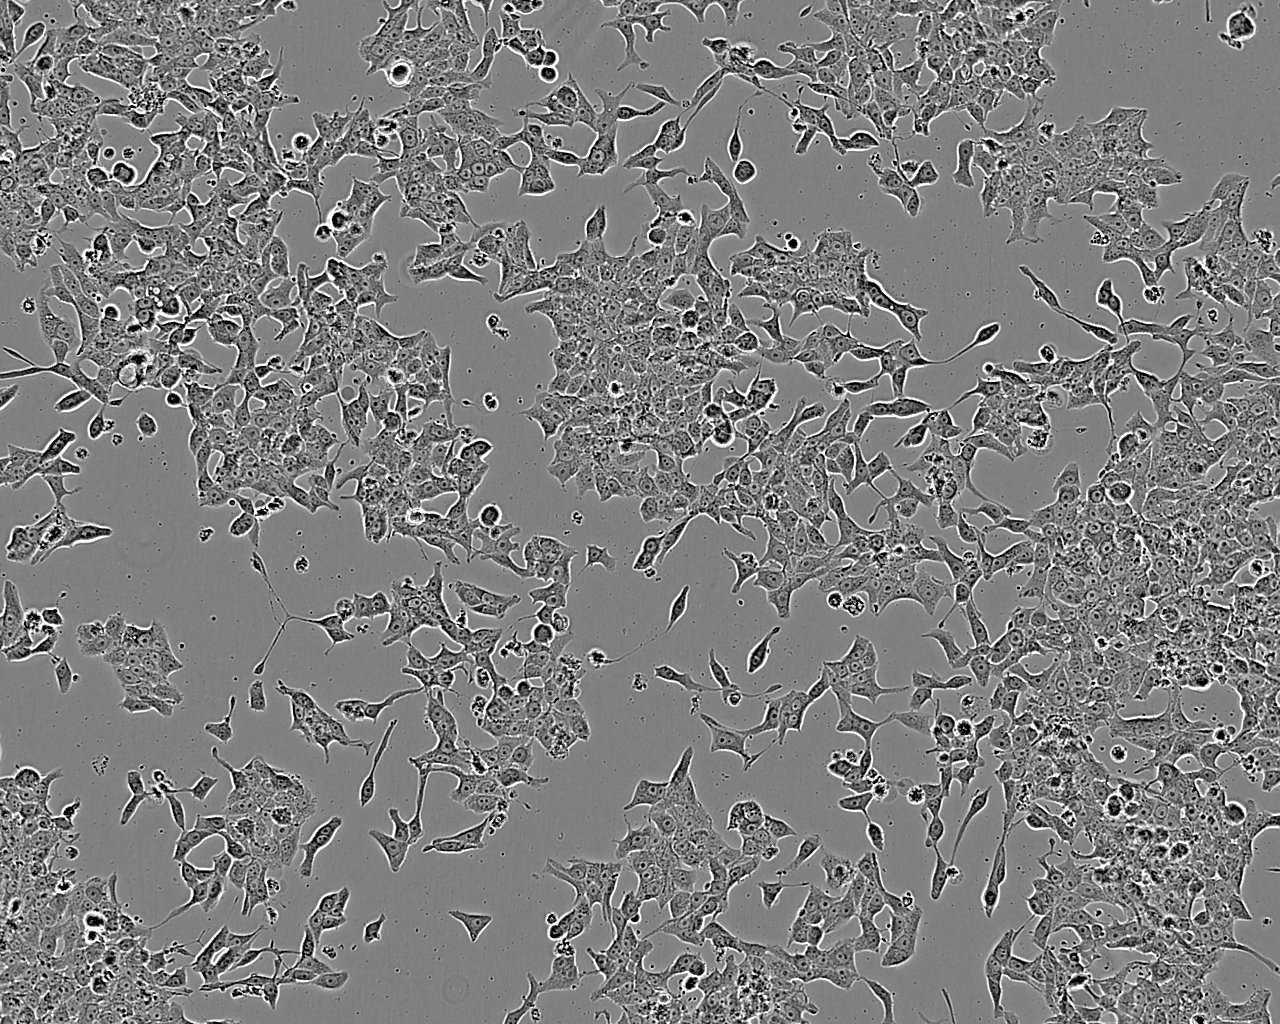 SKO-007 Cell:人多发性骨髓瘤细胞系,SKO-007 Cell